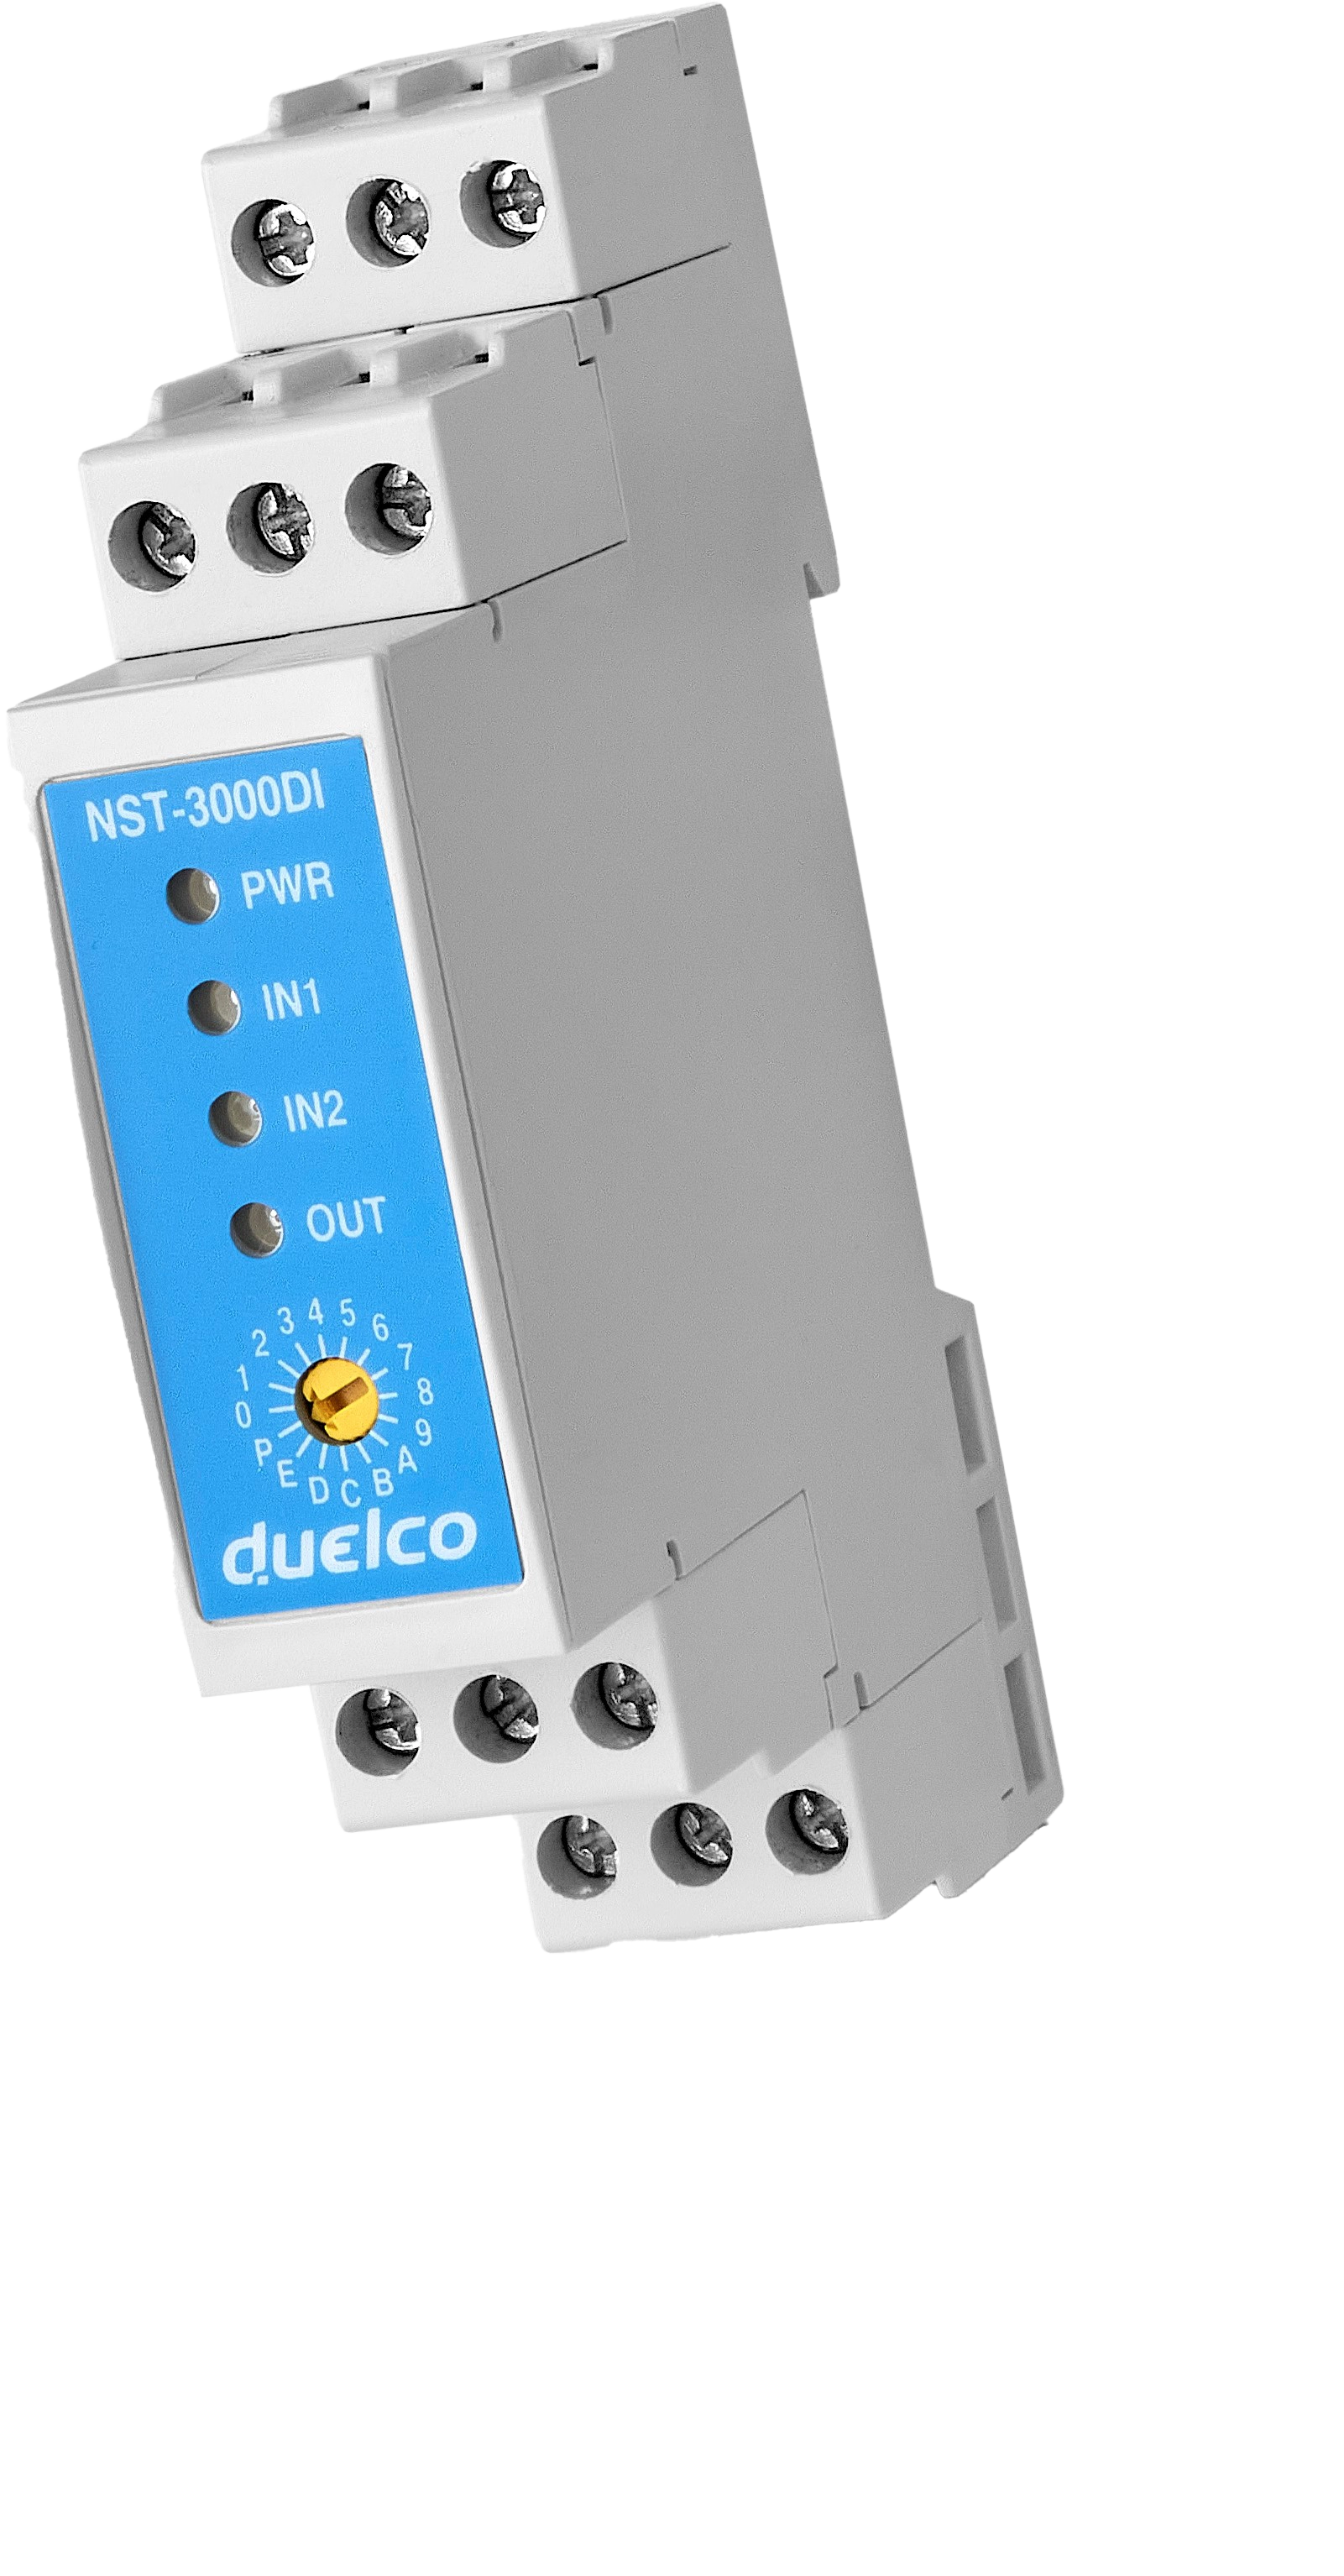 Duelco NST-3000DI voorgeprogrammeerd noodstop veiligheidsrelais 24VDC